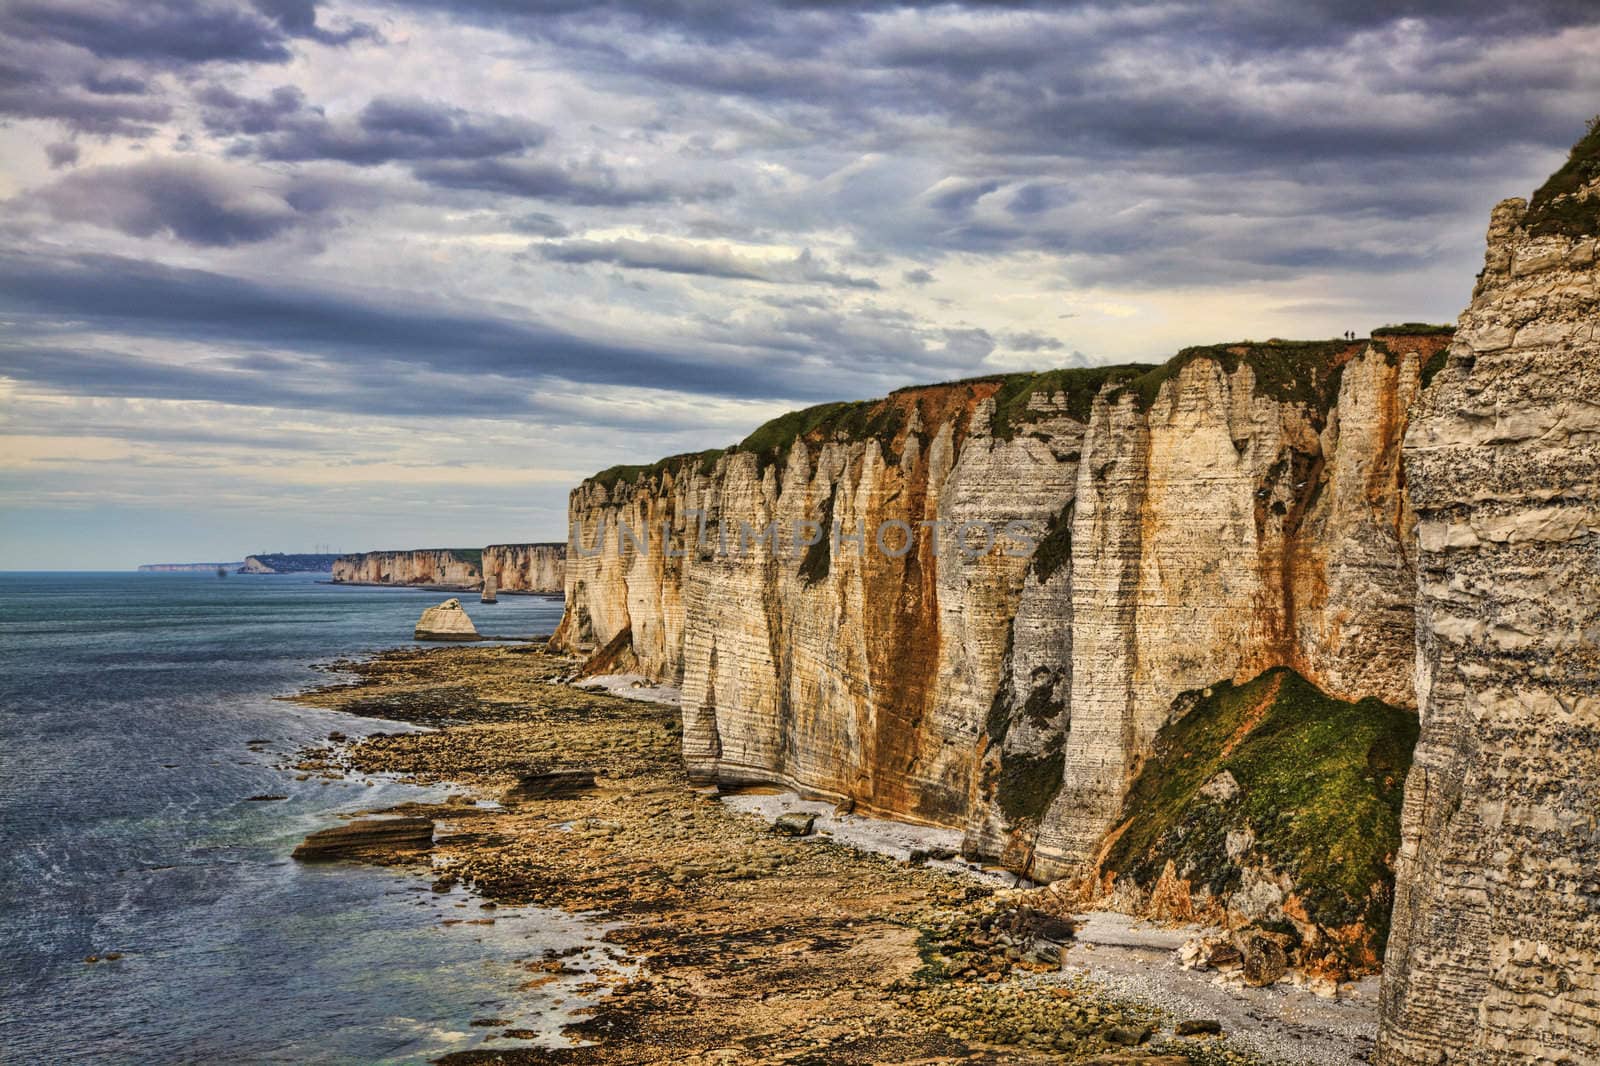 Cliffs of Etretat by RazvanPhotography